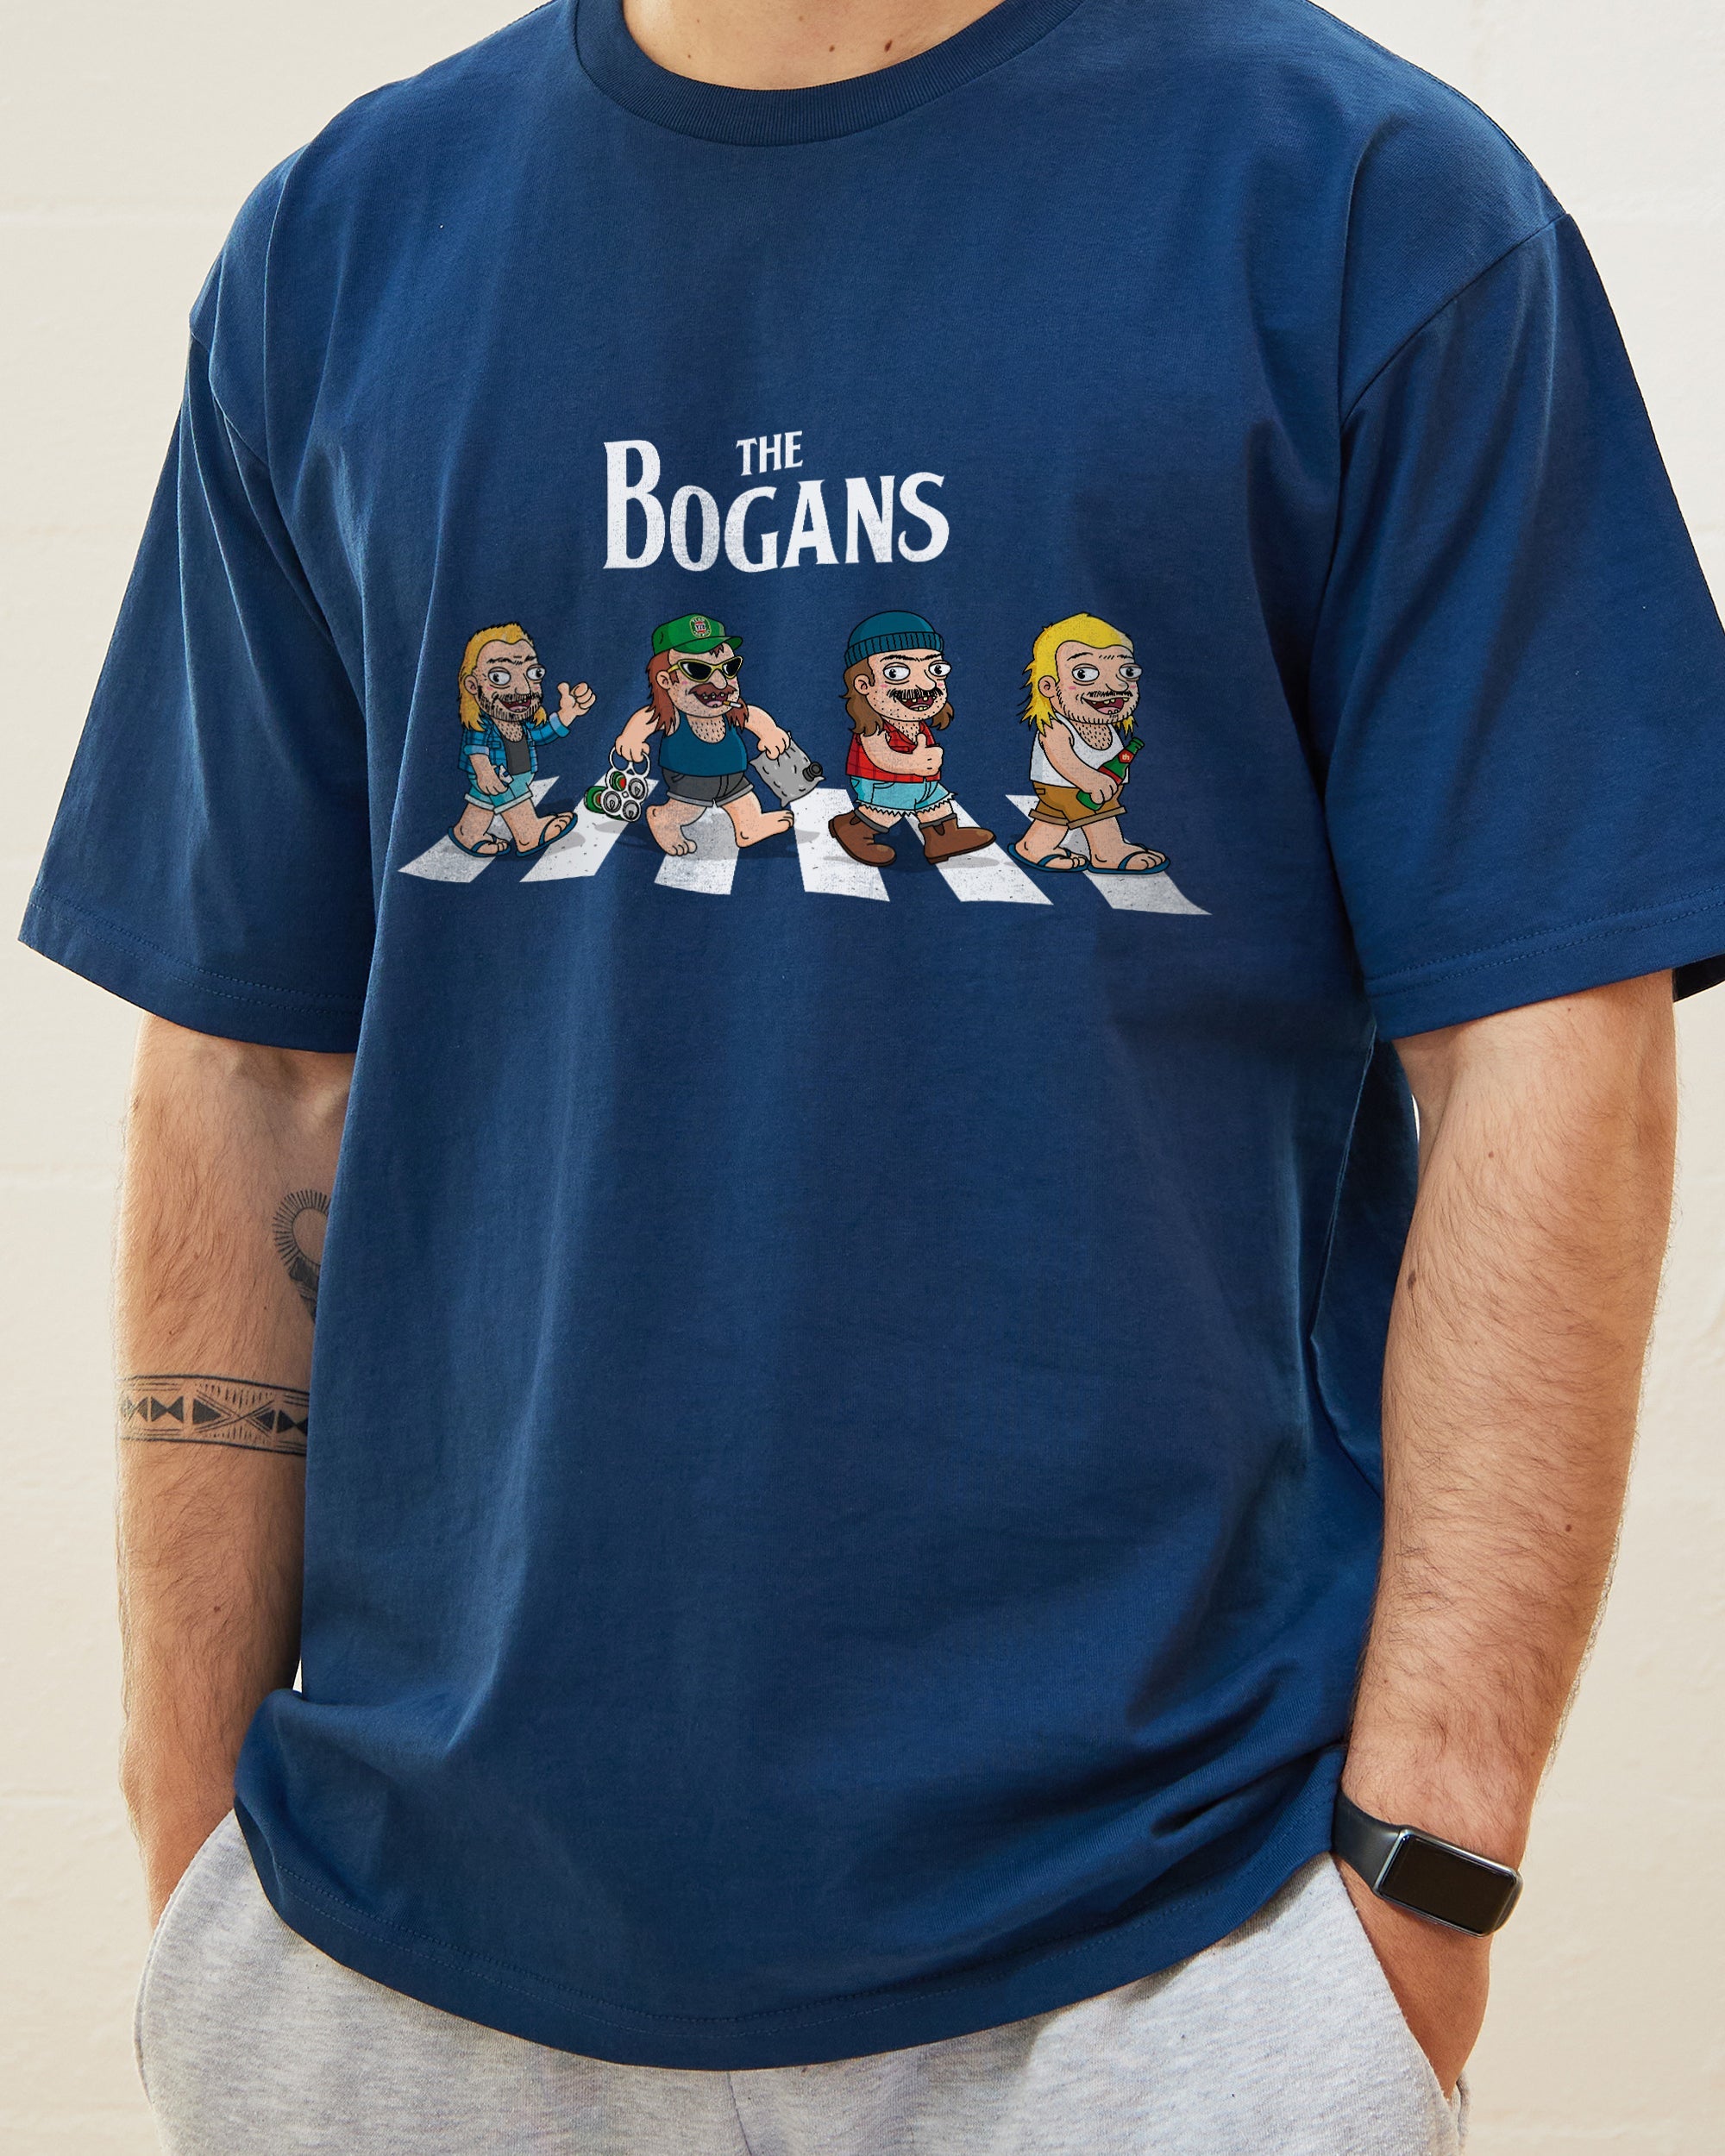 Bogan Abbey Road T-Shirt Australia Online Navy